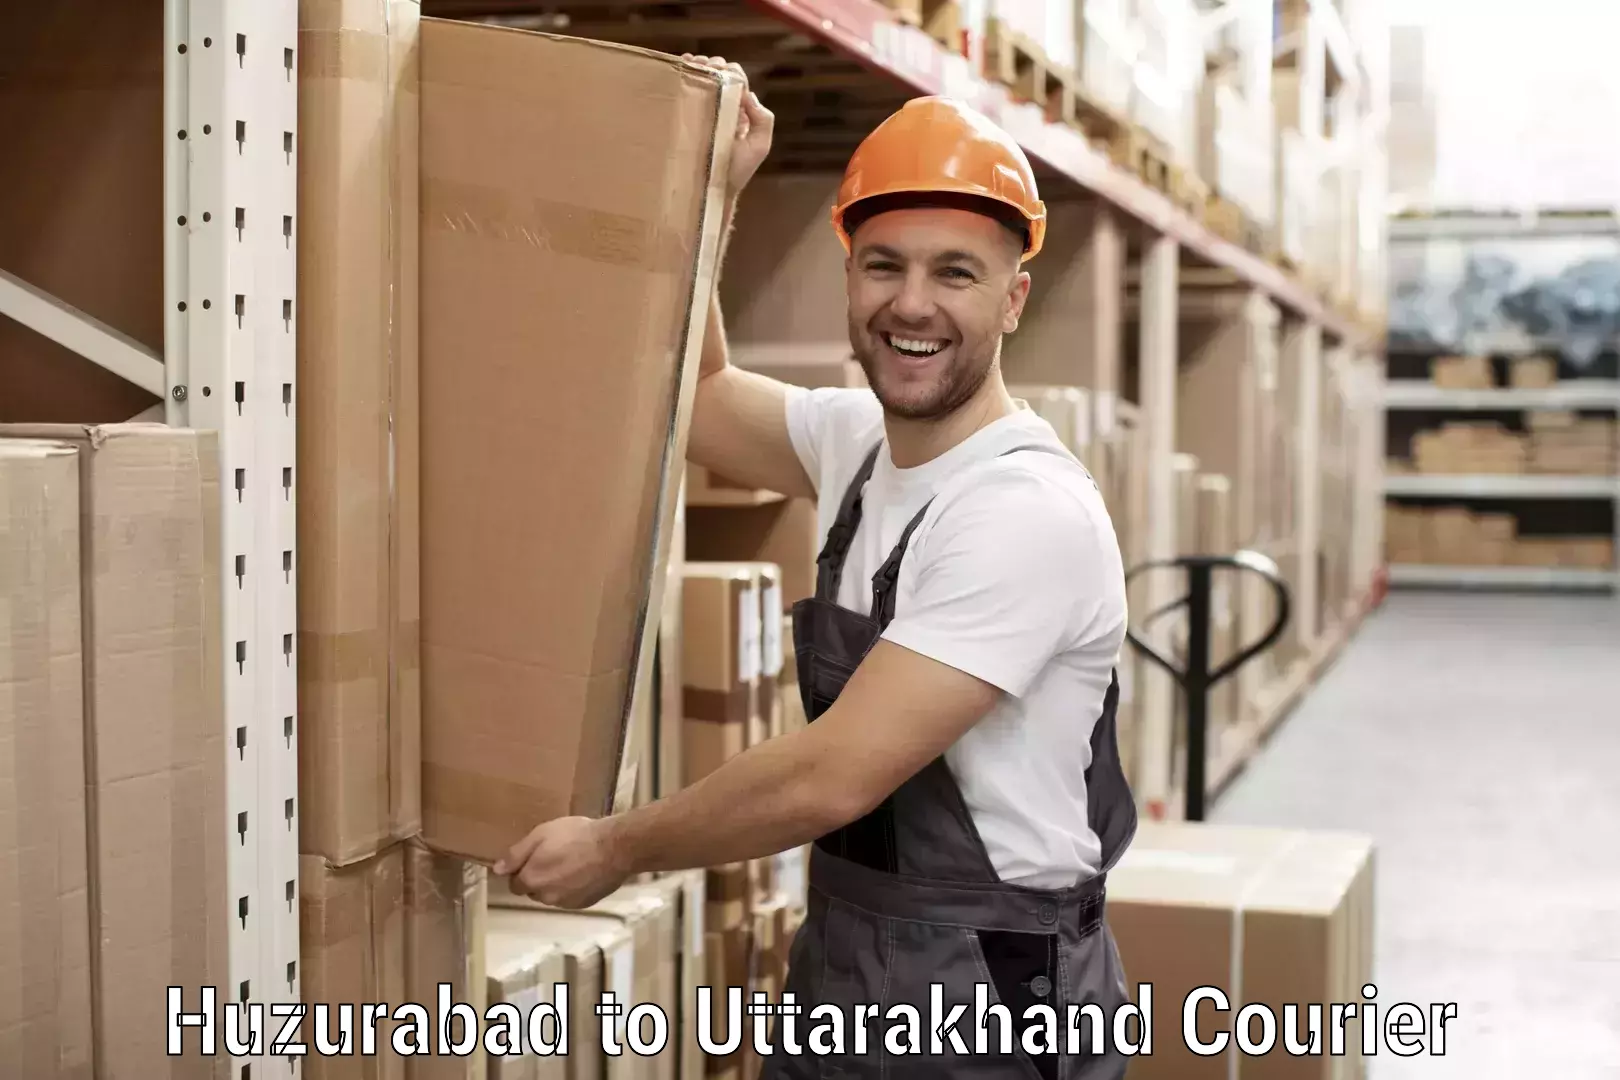 International courier rates Huzurabad to Paithani